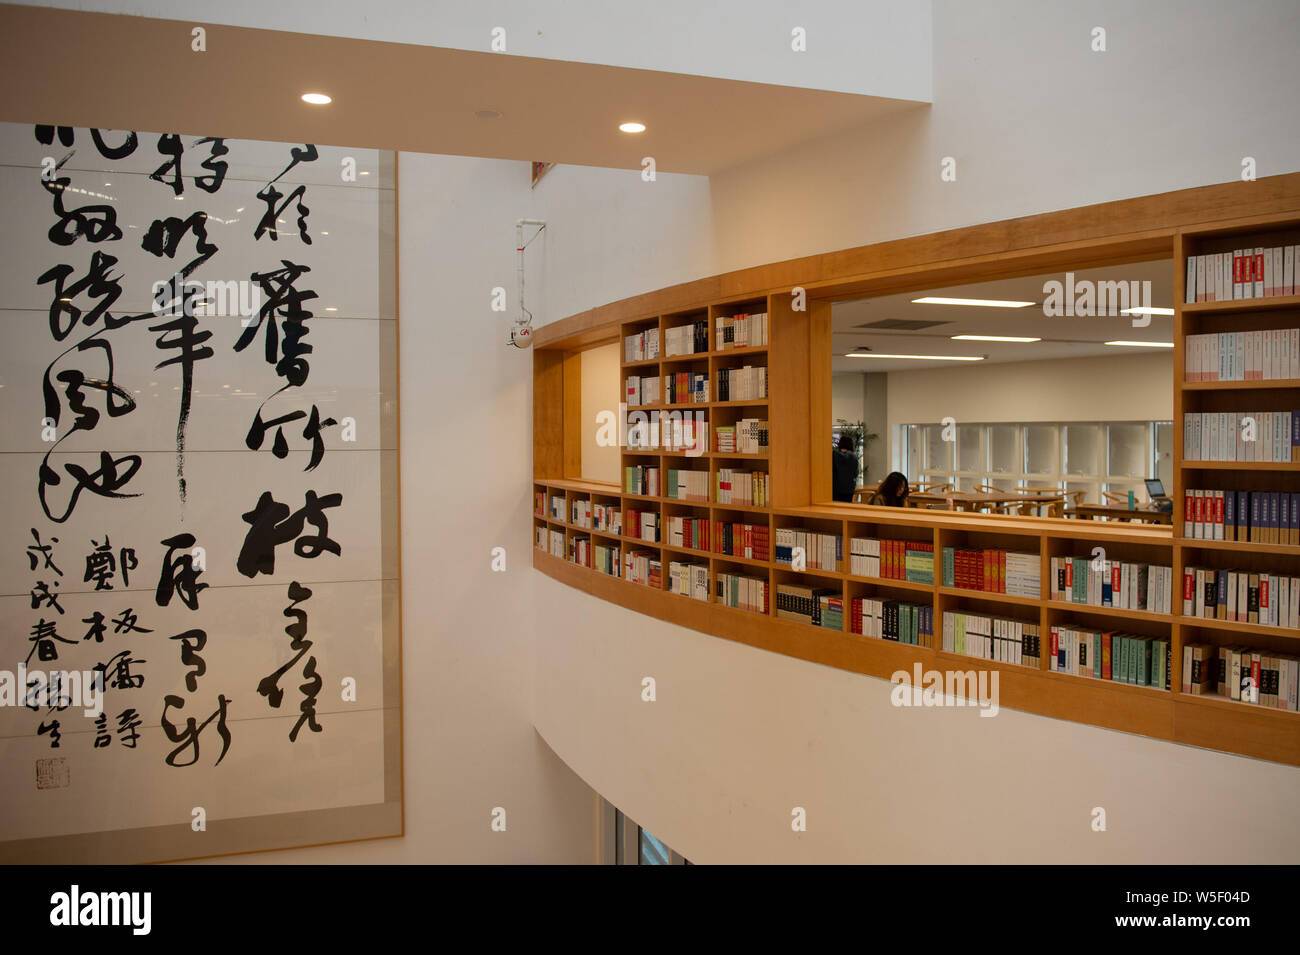 Innenansicht der Bibliothek an der Chinesischen Universität von Hongkong, Shenzhen, abgekürzt als der CUHK - Shenzhen in Shenzhen City, South China Guangdong Stockfoto